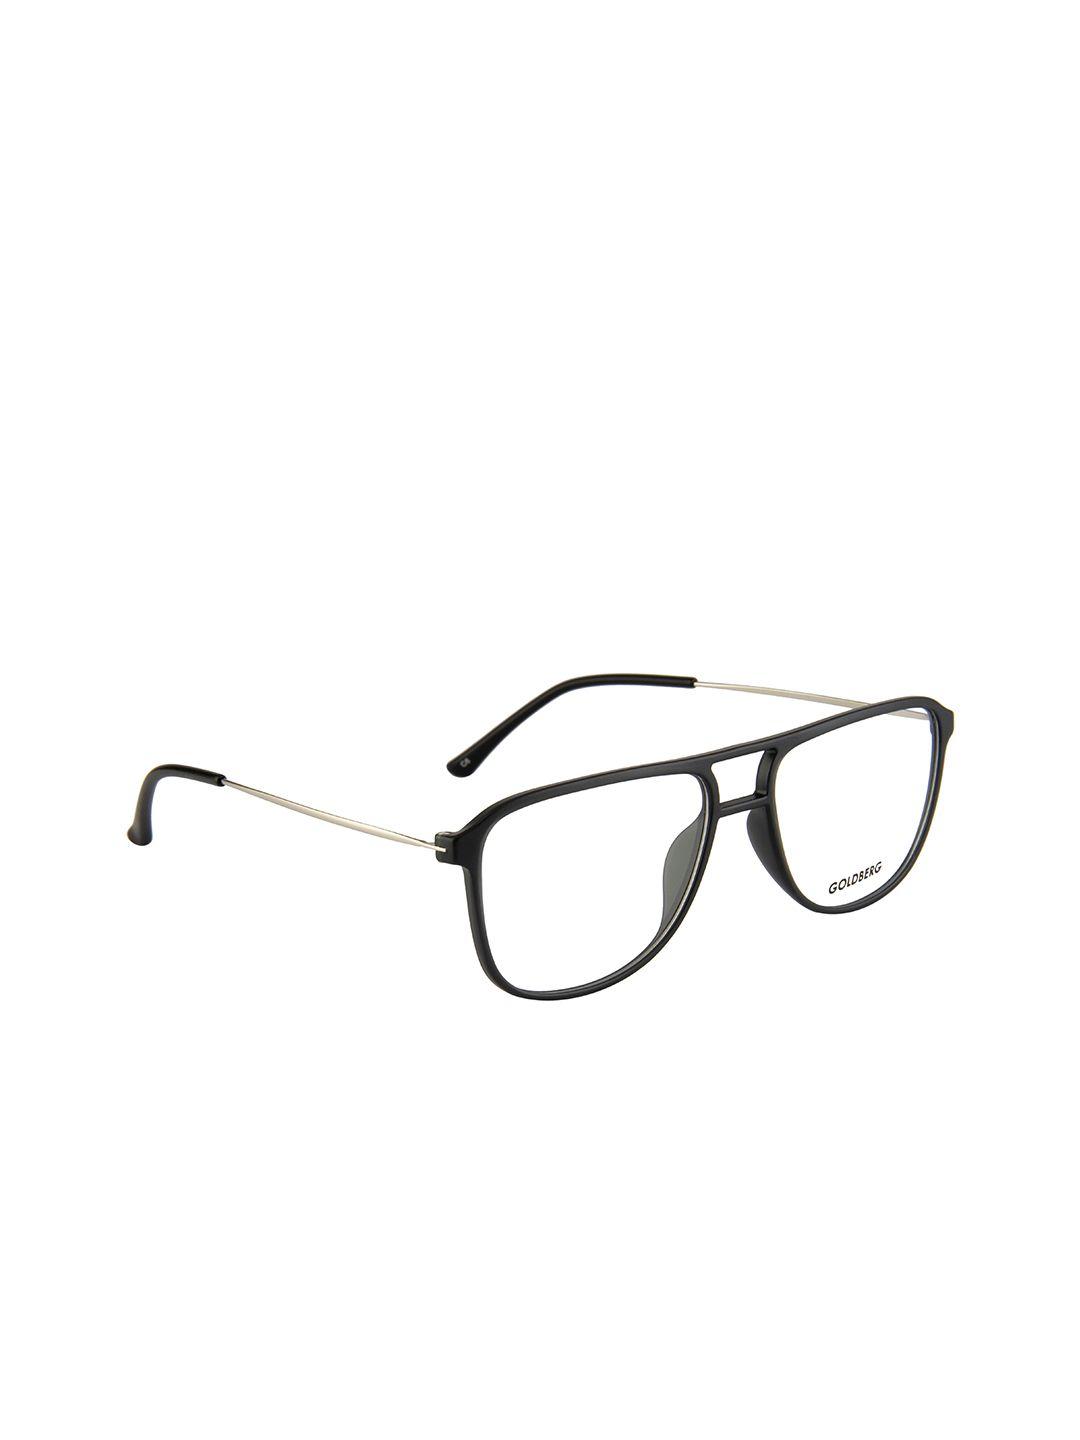 gold berg unisex black full rim aviator frames eyeglasses